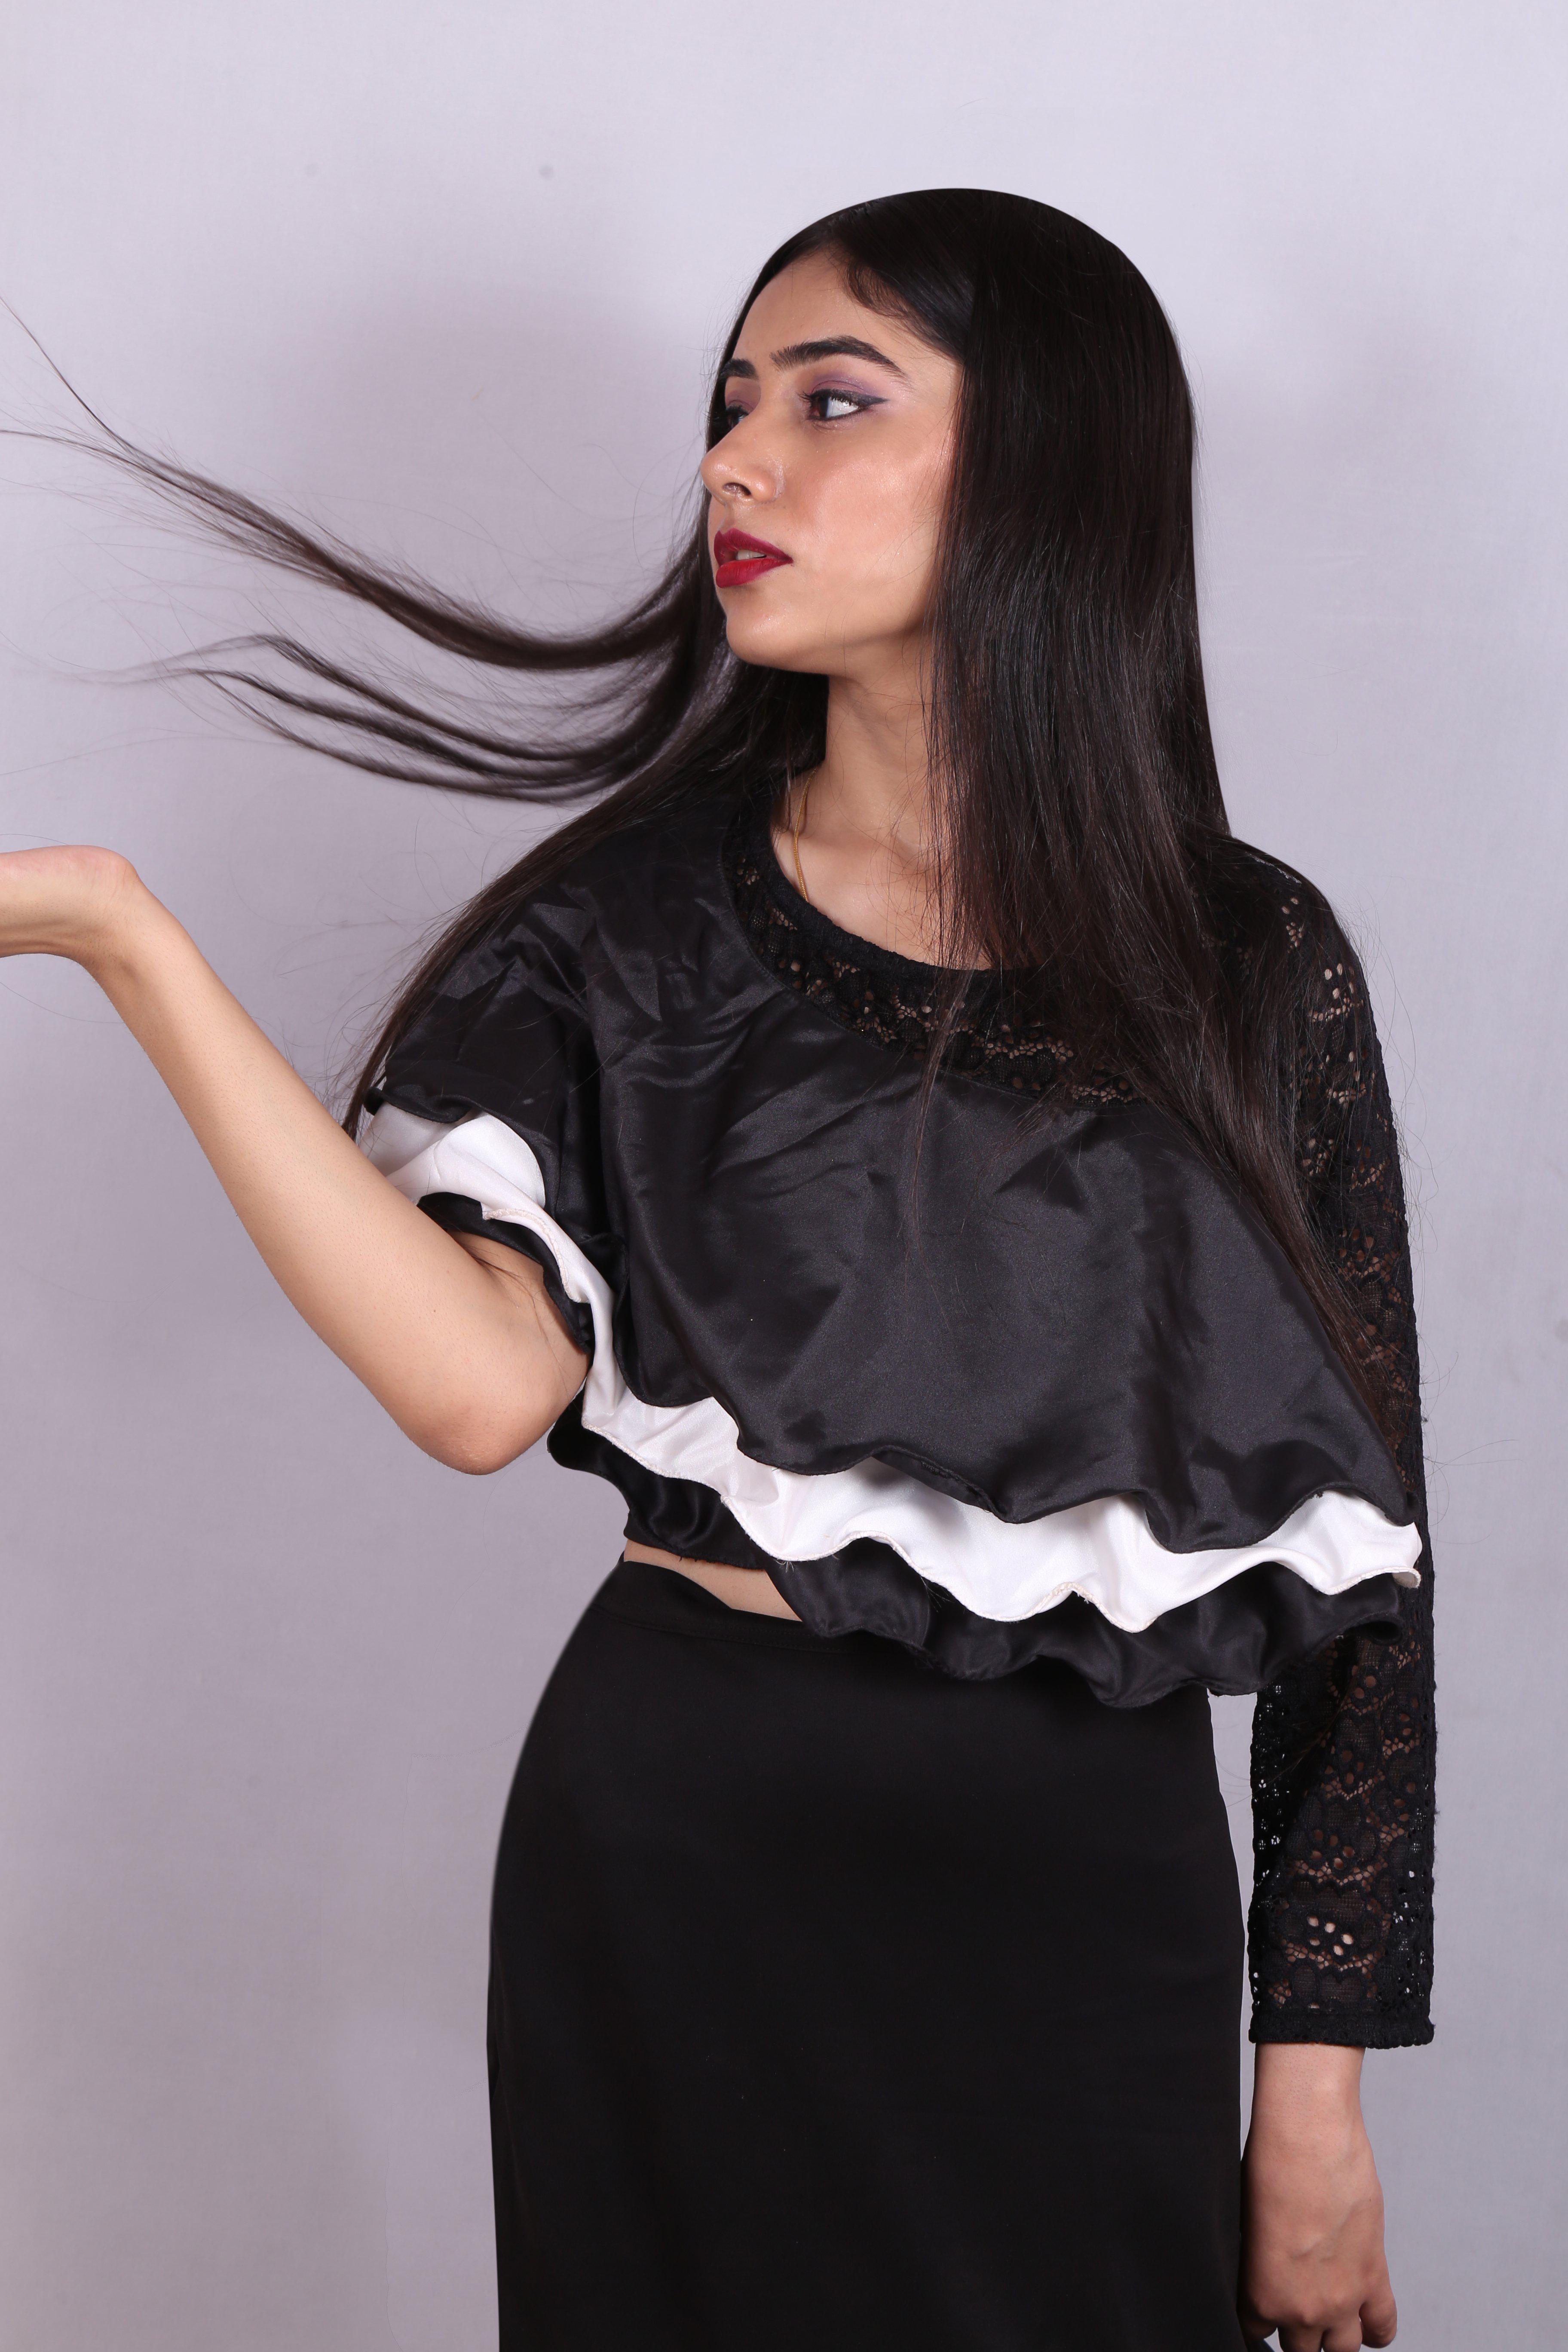 The Senorita!-Black & White Flared Skirt & Top-Adorable Me